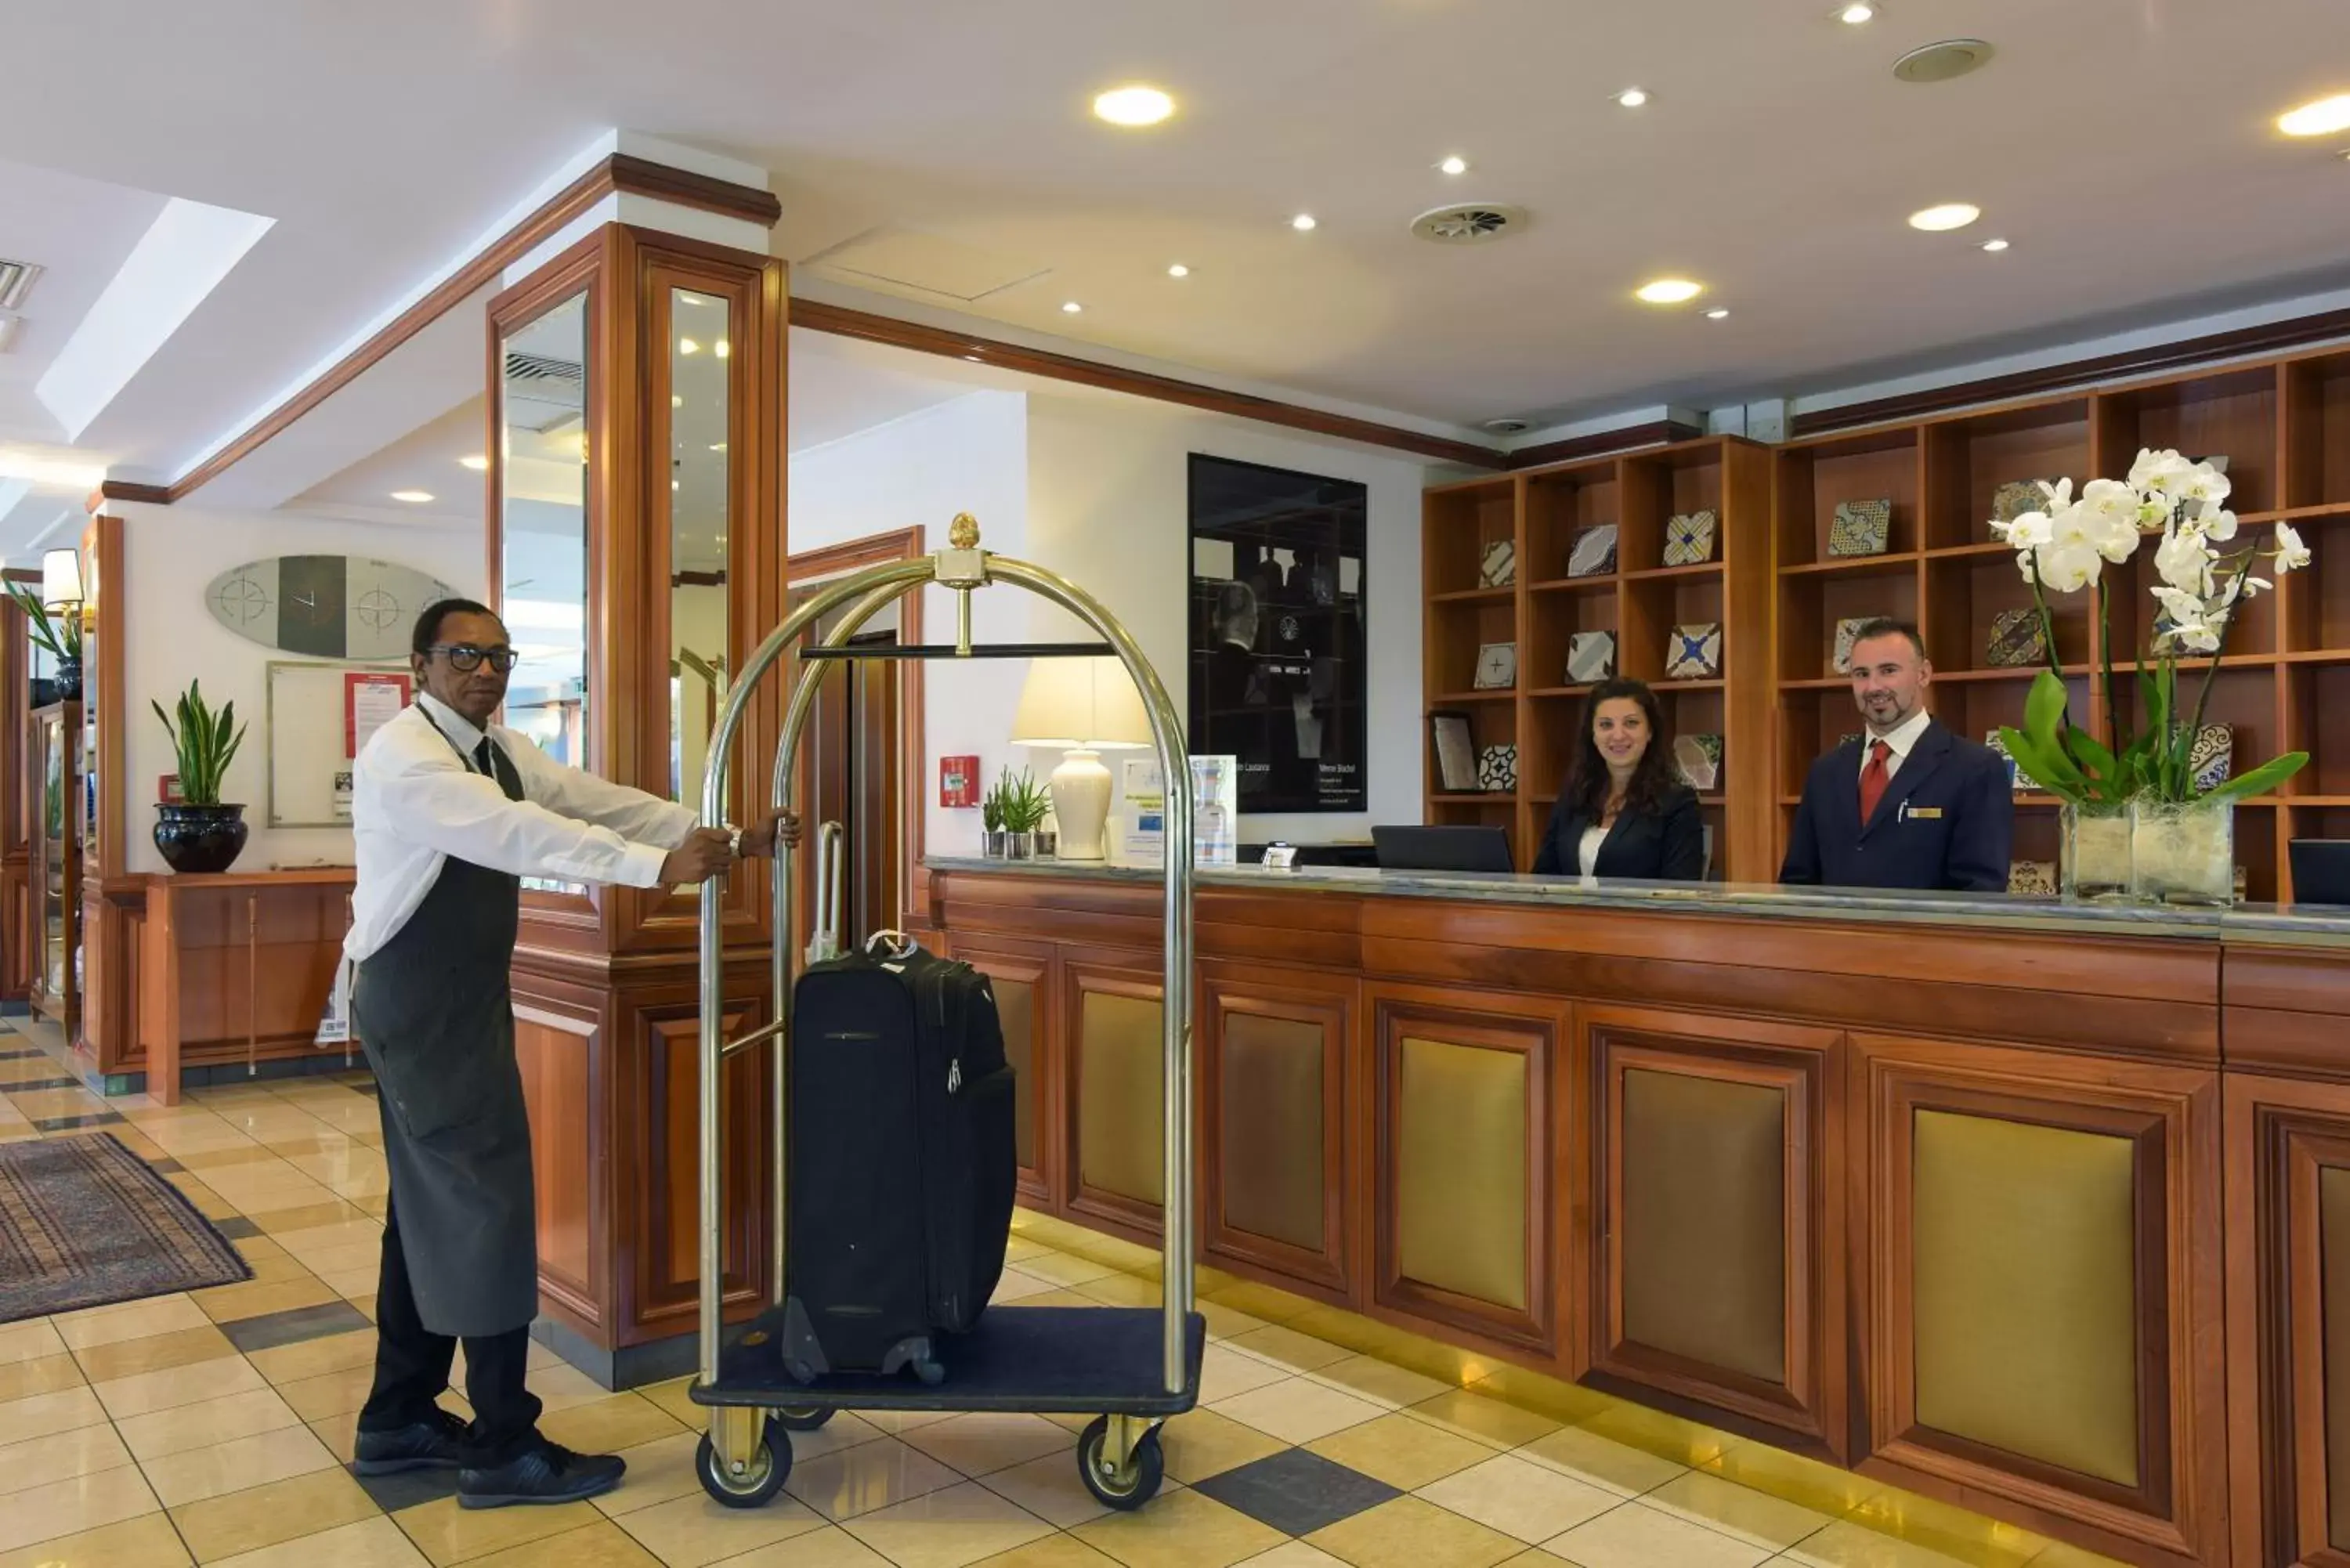 Staff in Grand Hotel Tiberio